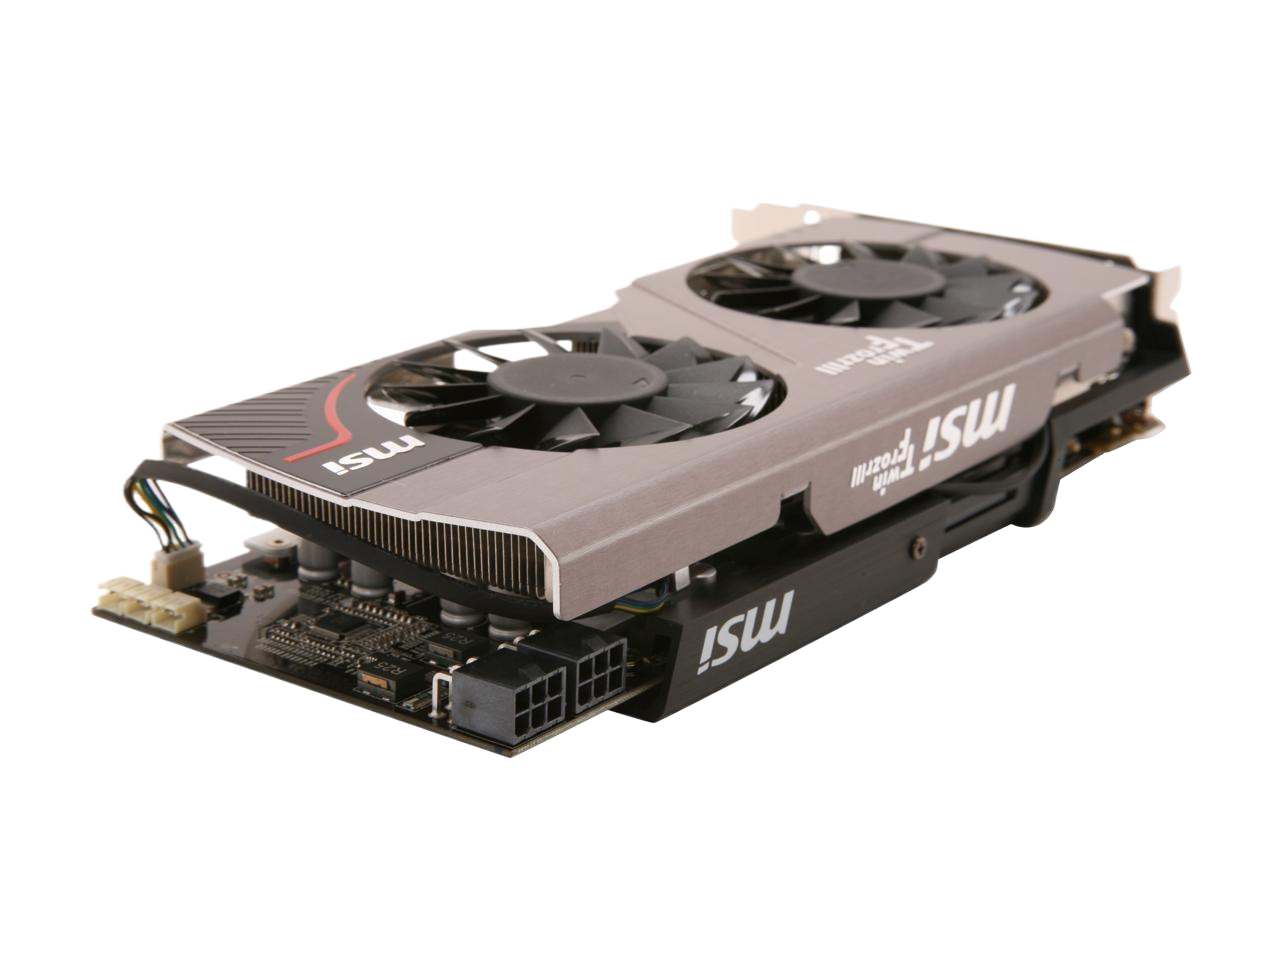 MSI GeForce GTX 560 Ti Fermi 1GB GDDR5 PCI Express 2.0 x16 SLI Support N560GTX-Ti Hawk Video Card